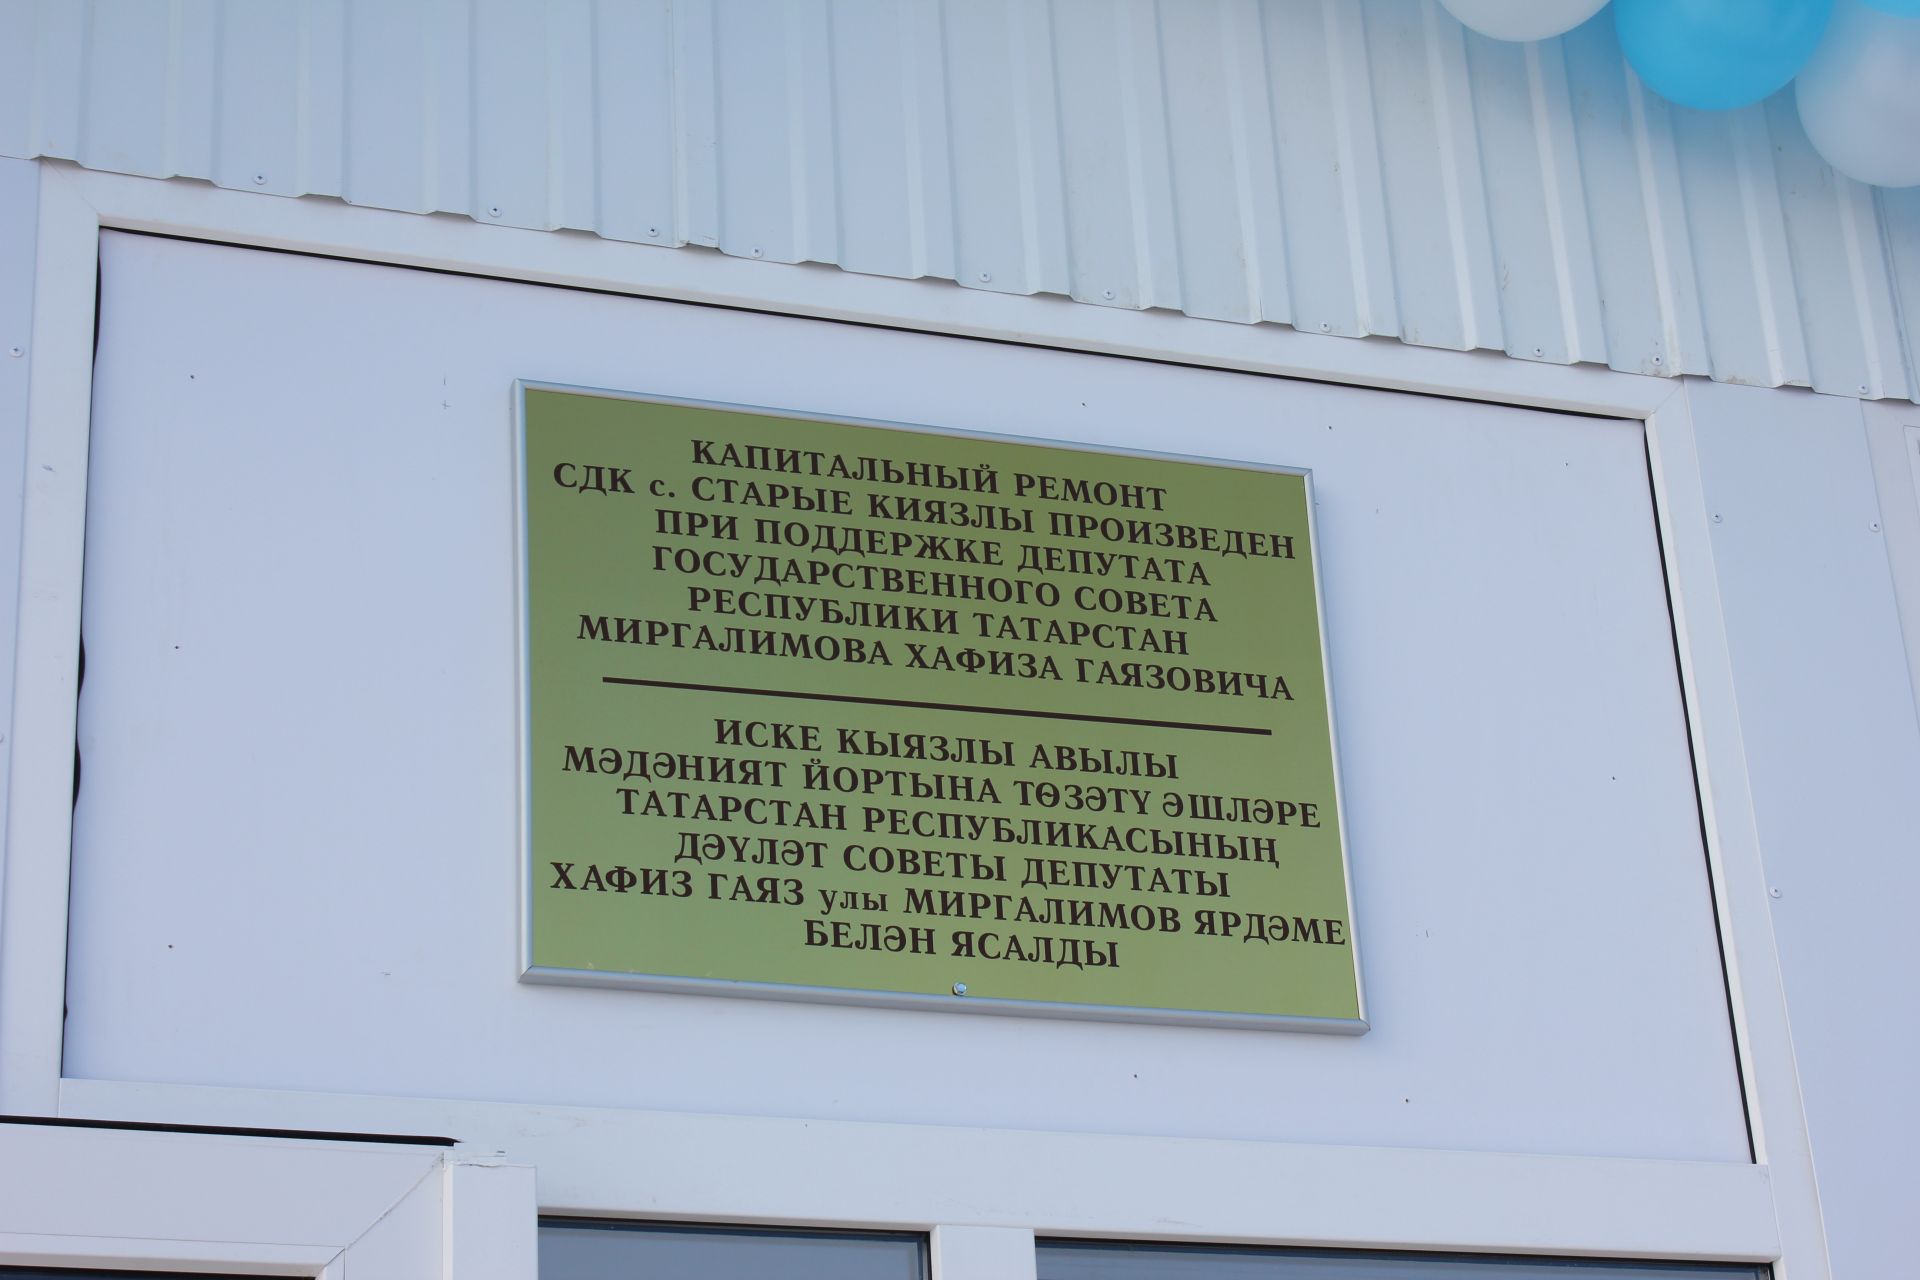 Аксубай районында Вәсил Шәйхразиев катнашында  мәдәният учагы ачтылар